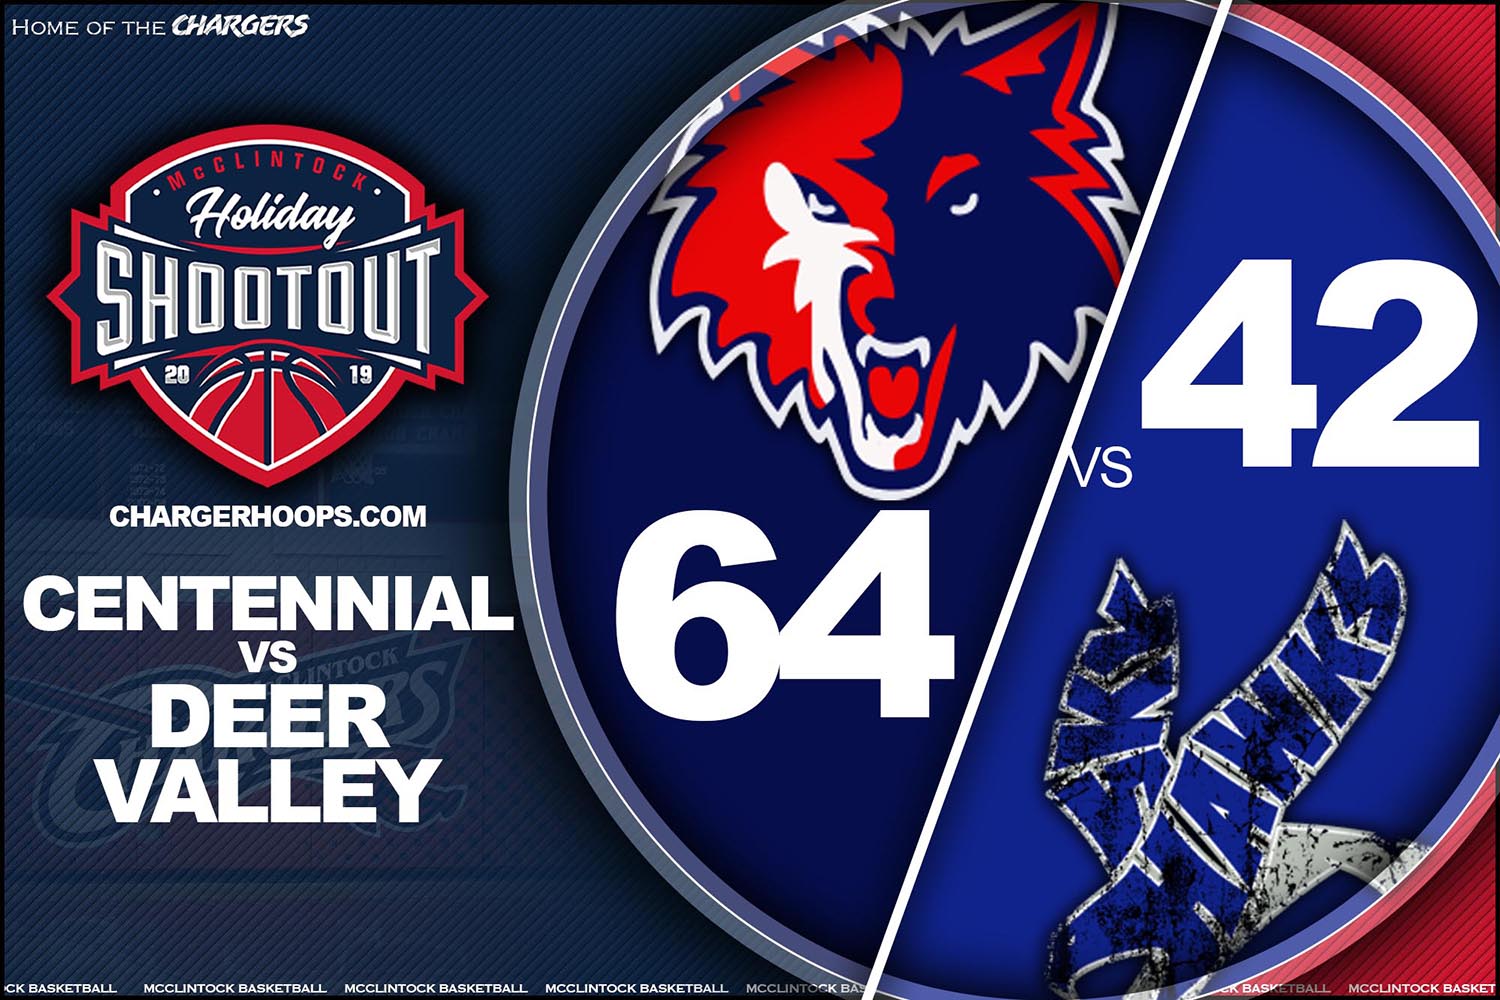 Game 3: Centennial 64 Deer Valley 42 Final